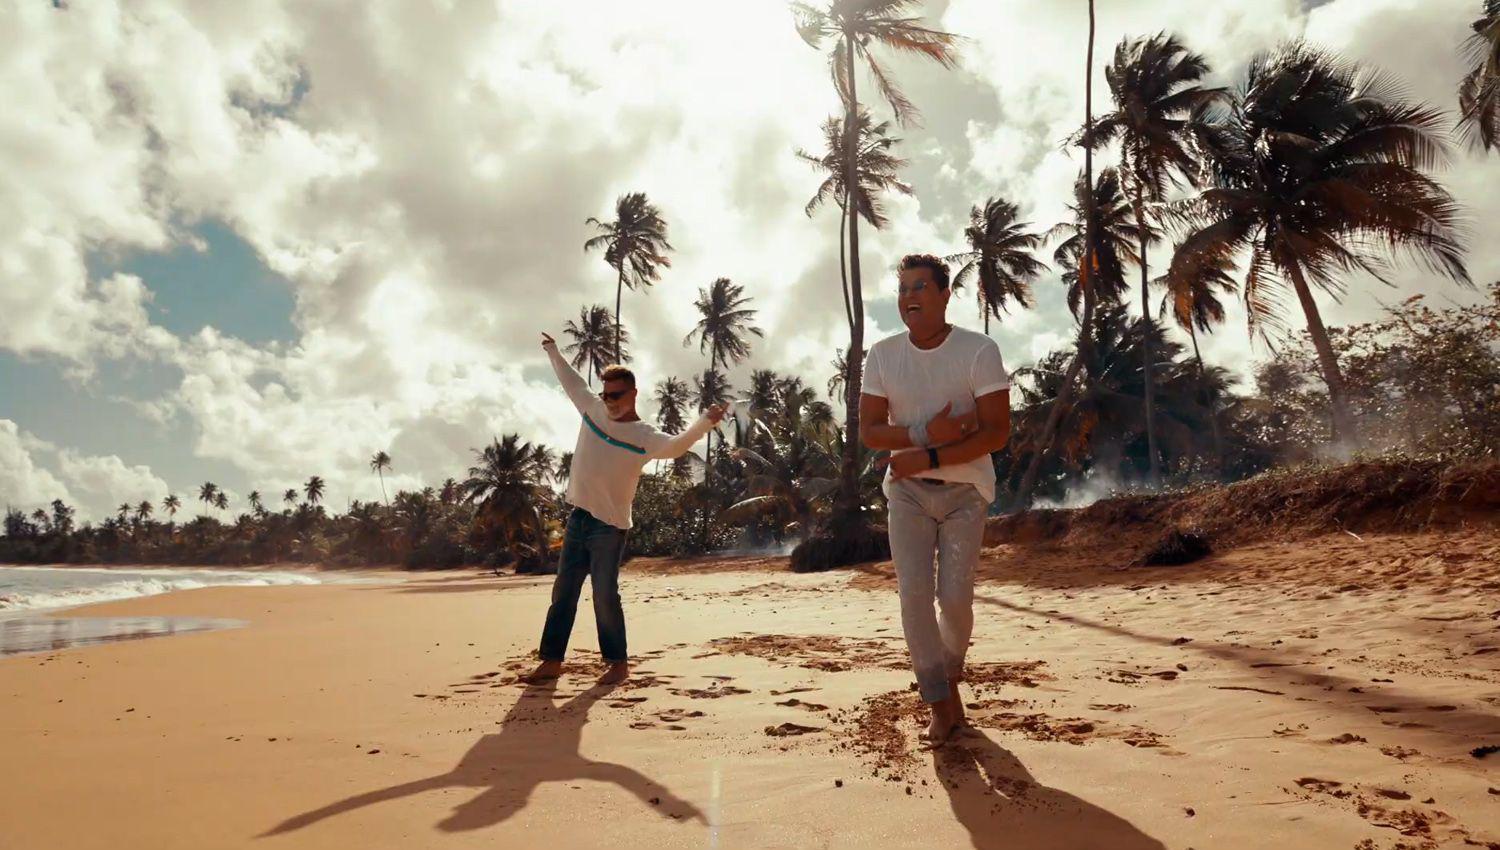 Carlos Vives y Ricky Martin derrochan colores vibrantes energiacutea contagiosa y vibra positiva en ldquoCancioacuten Bonitardquo